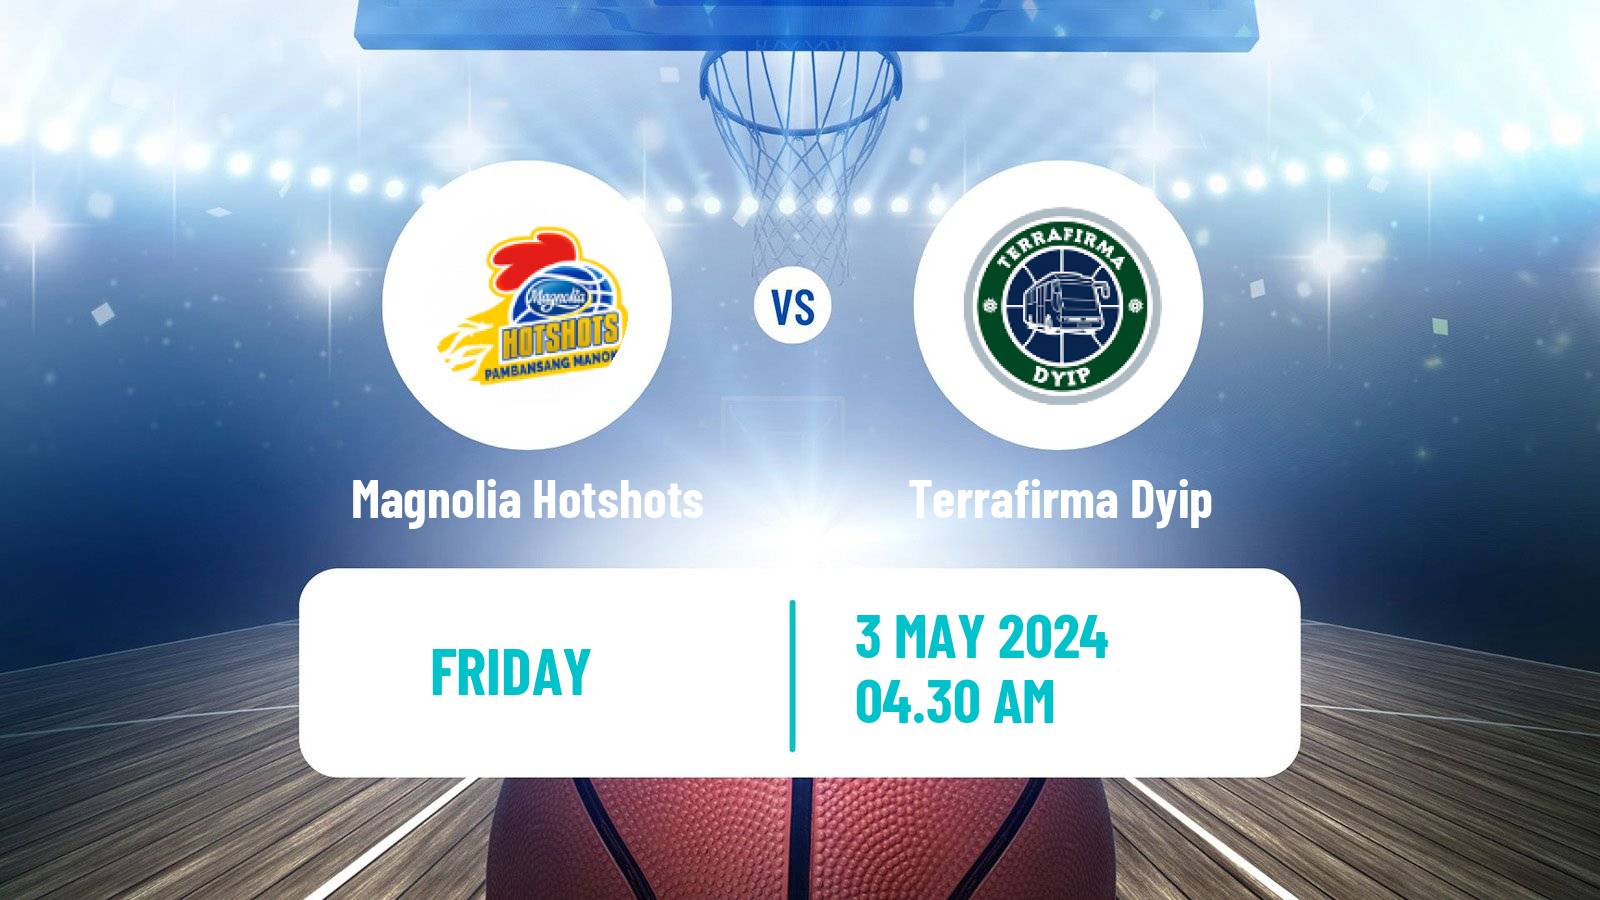 Basketball Philippines Cup Magnolia Hotshots - Terrafirma Dyip